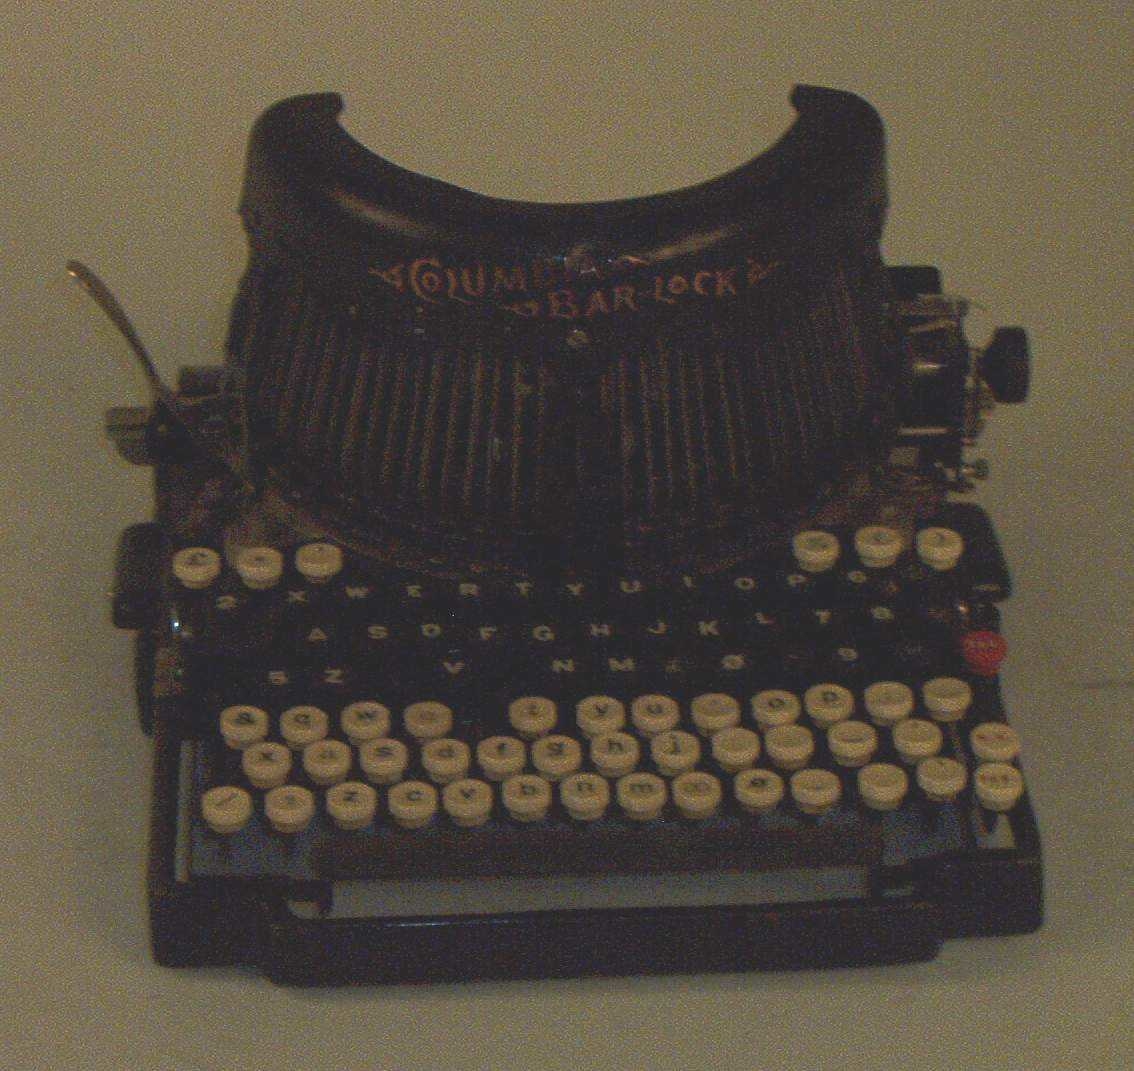 Skrivemaskinen med dobbelt tastatur, ett for store bokstaver og ett for små. Det ene tastaturen er hvitt, det andre svart.
